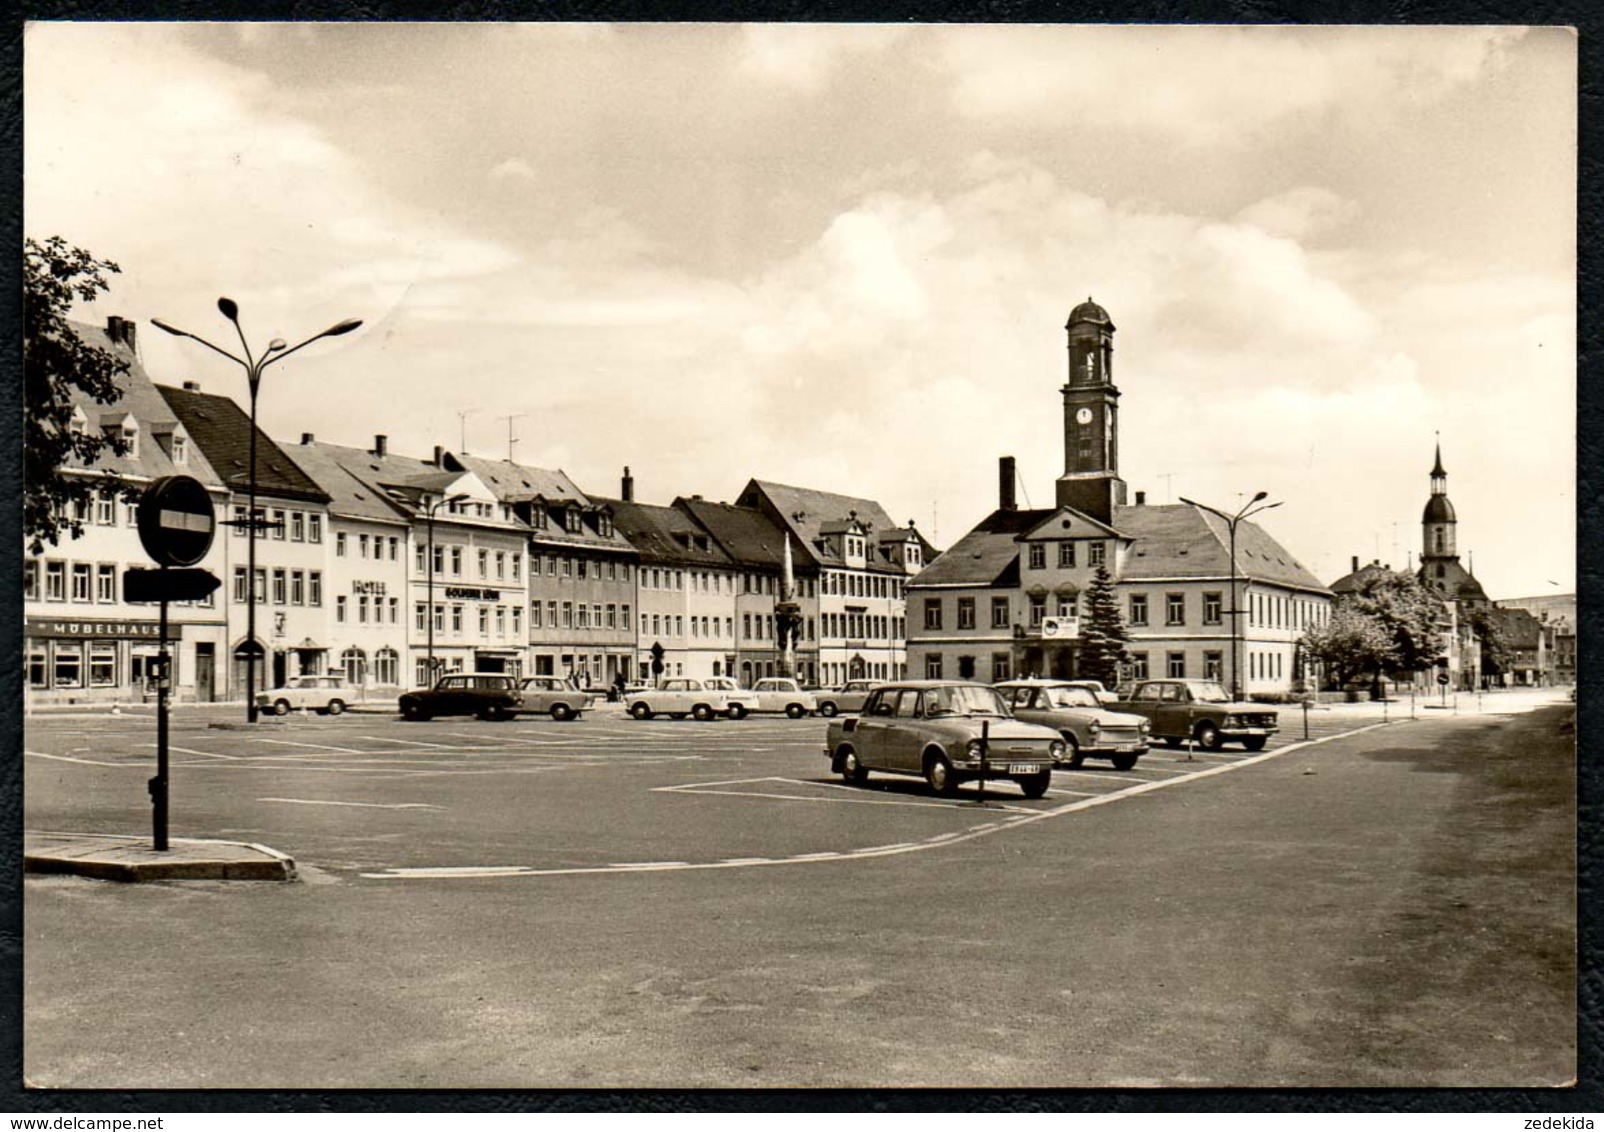 A2725 - Rochlitz - Markt Mit Rathaus - Moskwitsch Skoda Trabant P 70 - Gel 1975 - Rochlitz